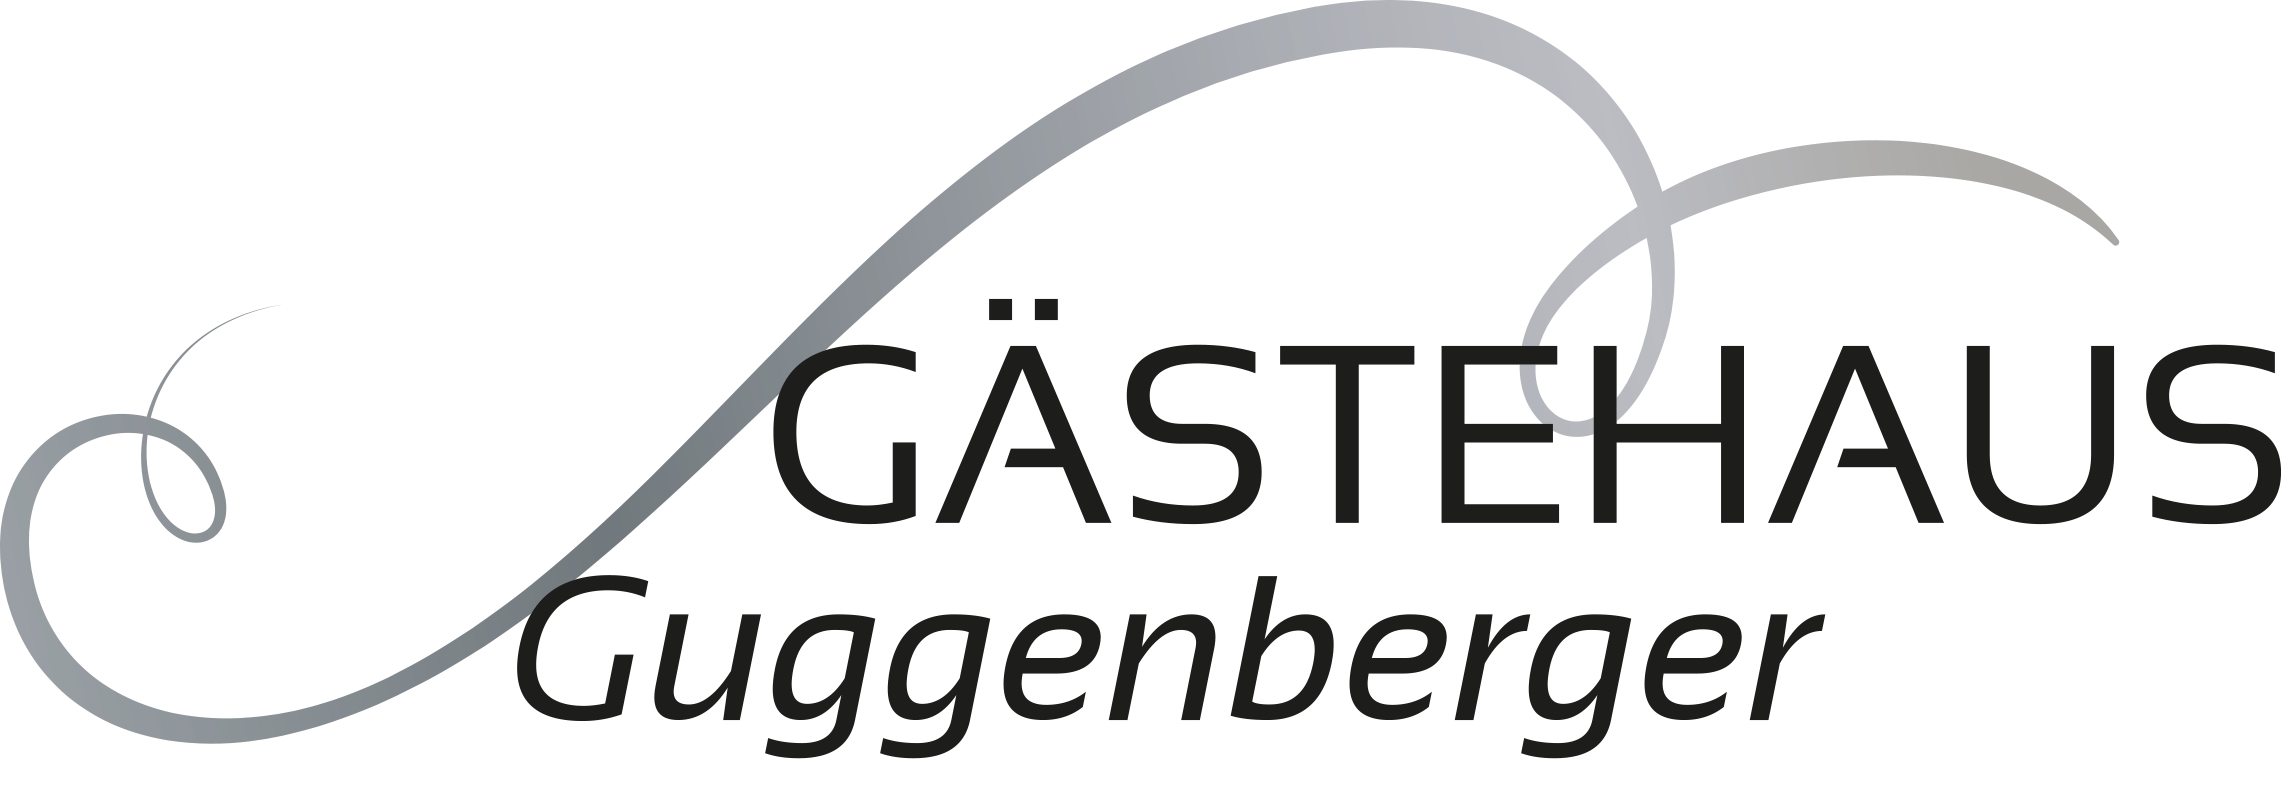 Gaestehaus Guggenberger Siegertsbrunn Logo